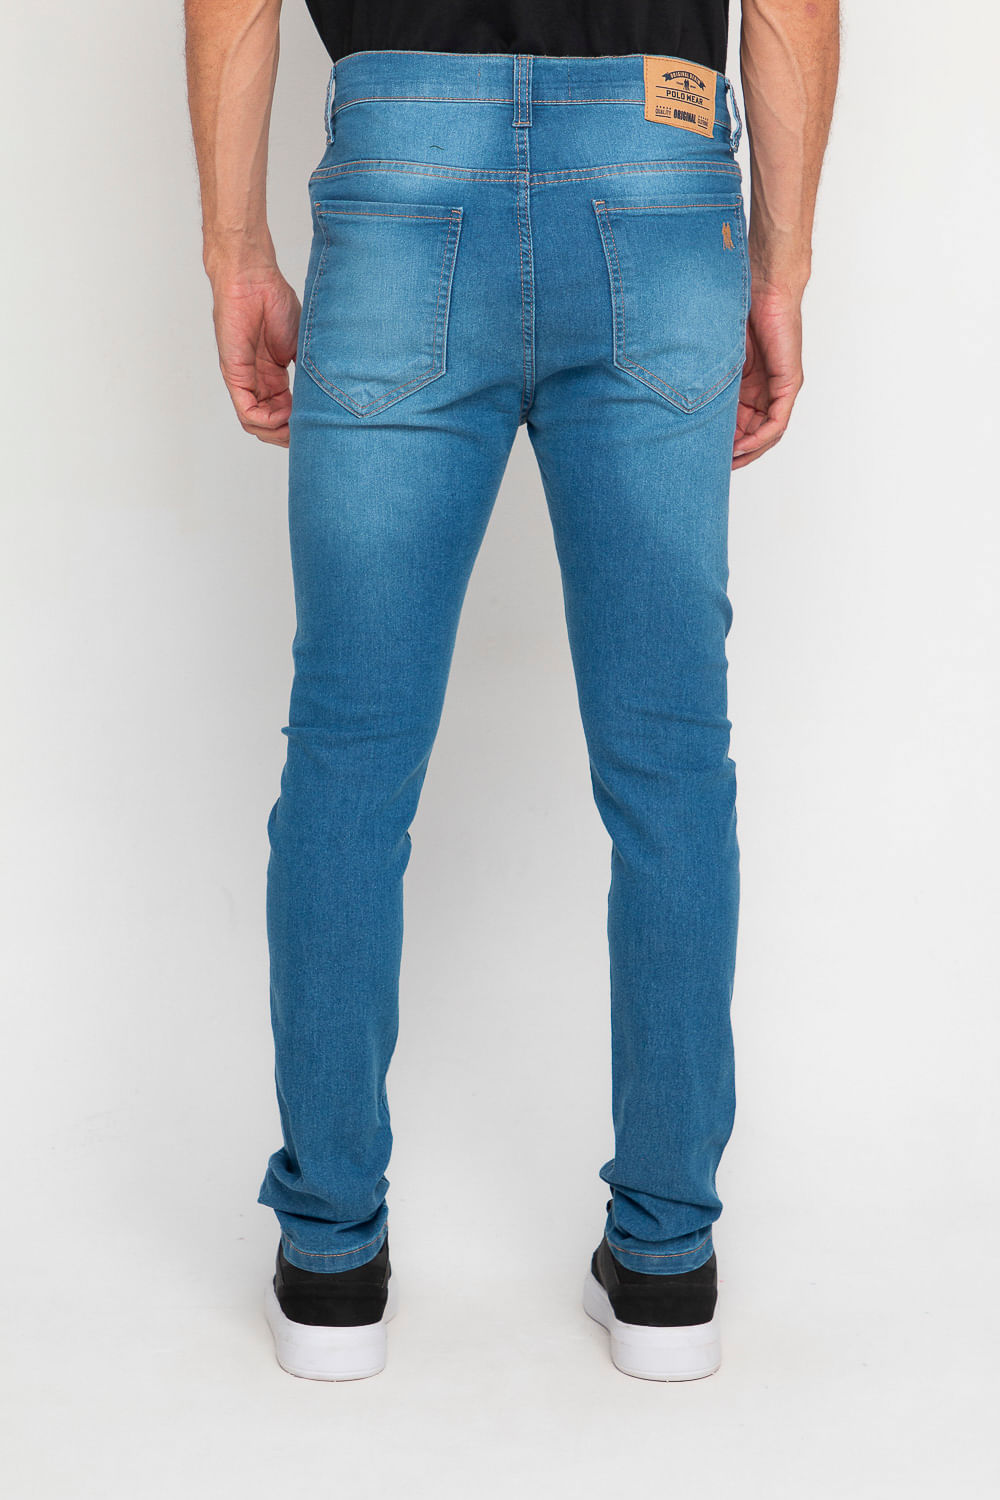 KS CASUAL & SPORT Calça Jeans Delavê Masculino PremiumII Azul